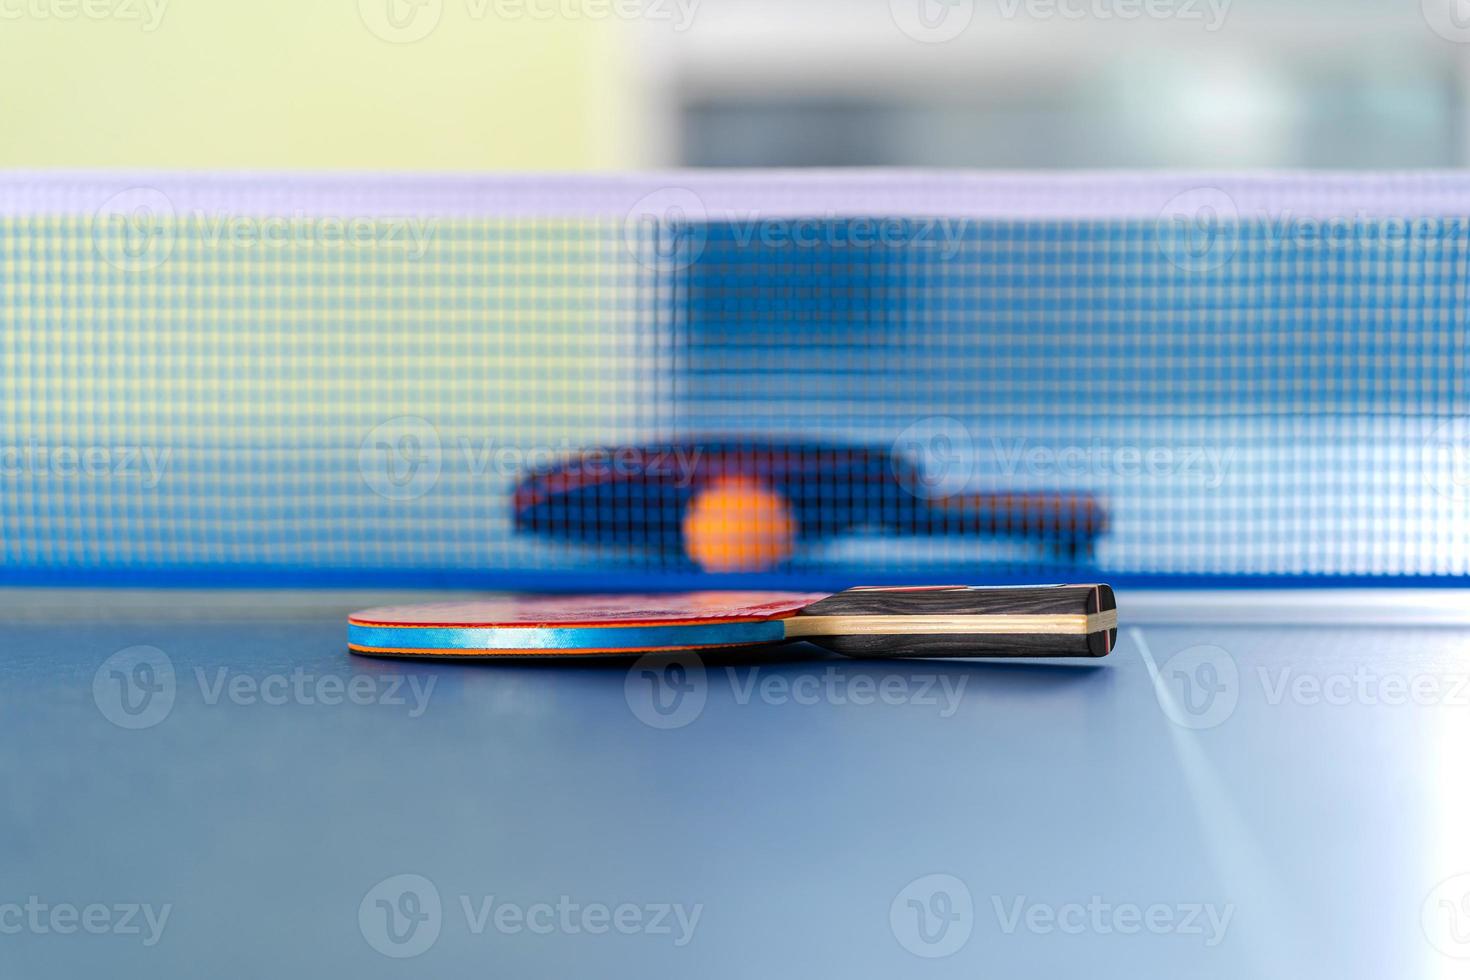 raquete de tênis de mesa e bola foto